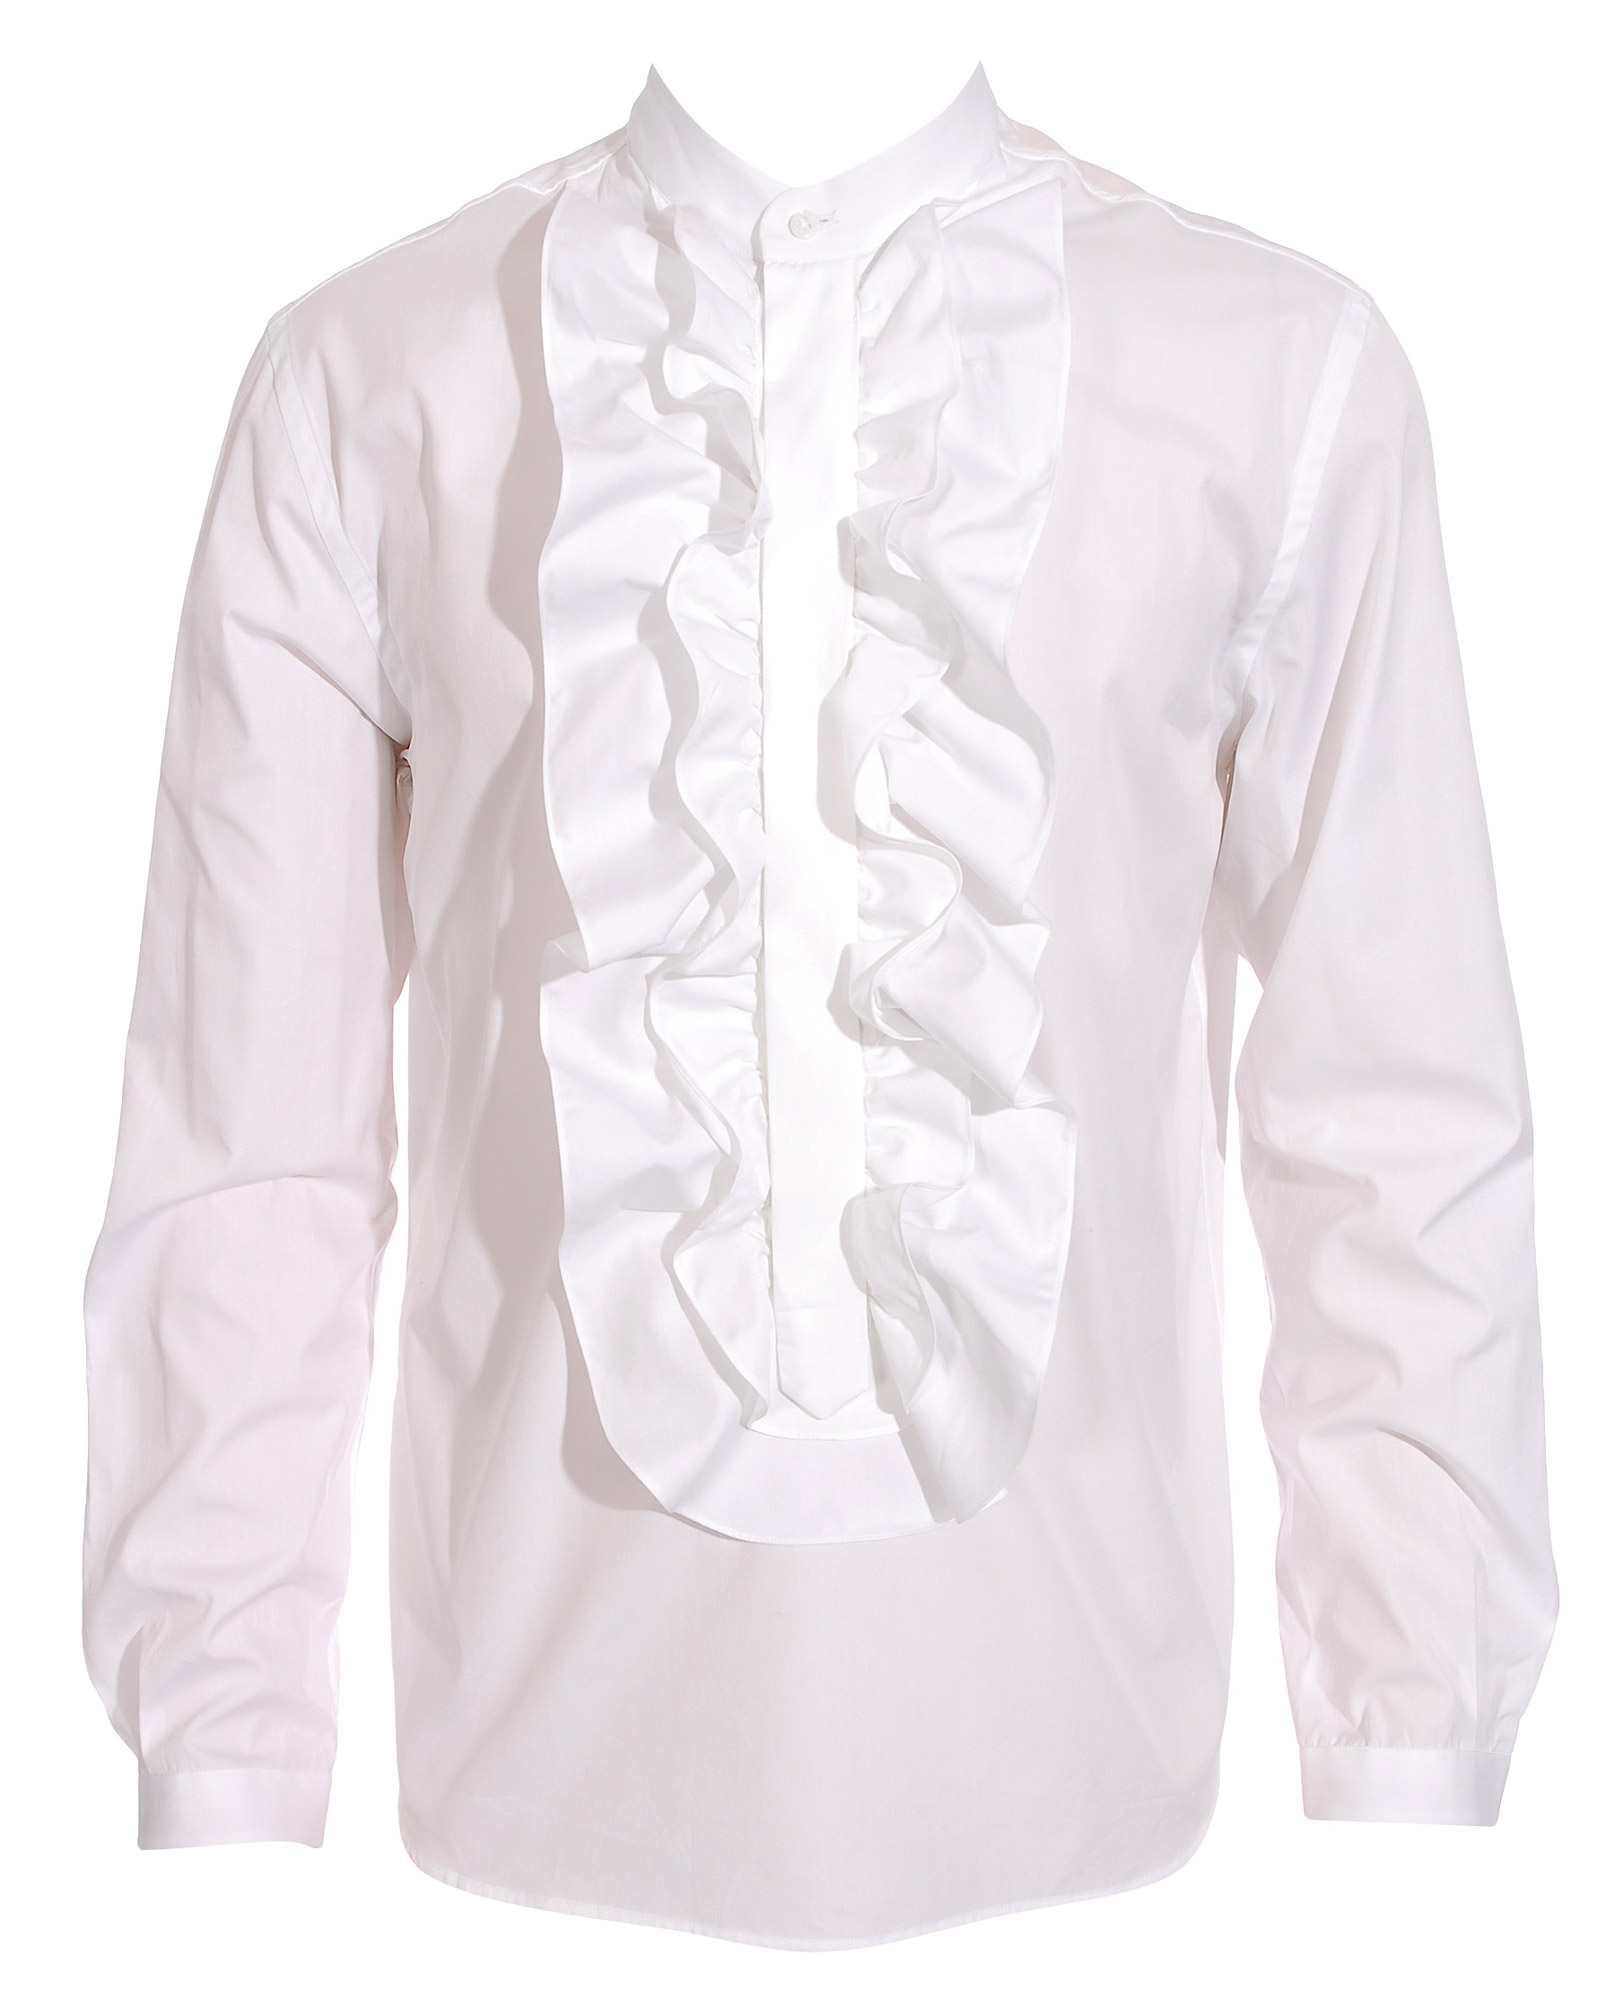 Umit Benan Ruffle Front Shirt in White for Men | Lyst UK